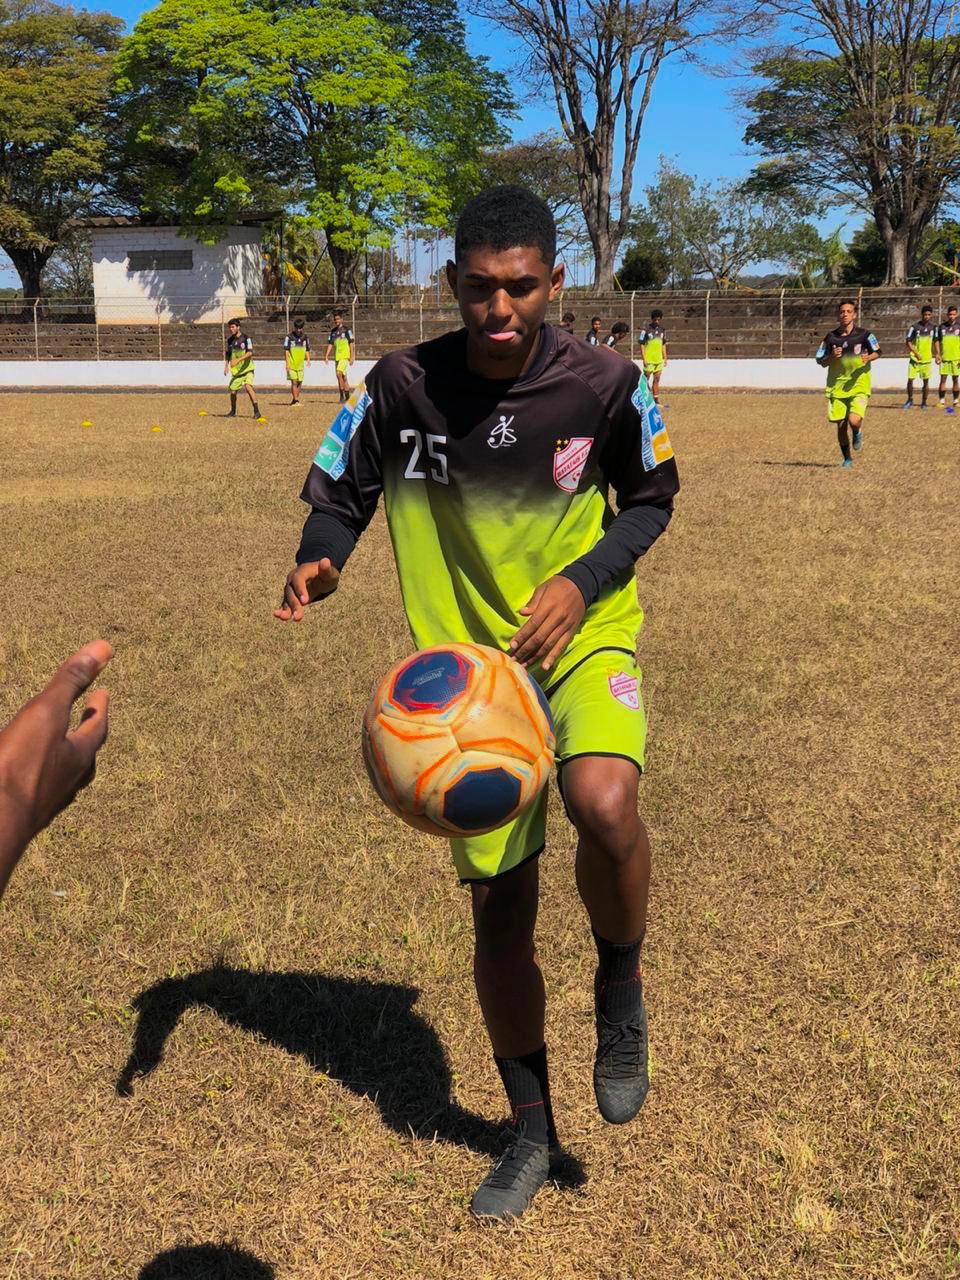  Conheça Maycon Pereira, atacante de 17 anos que sonha em brilhar no futebol